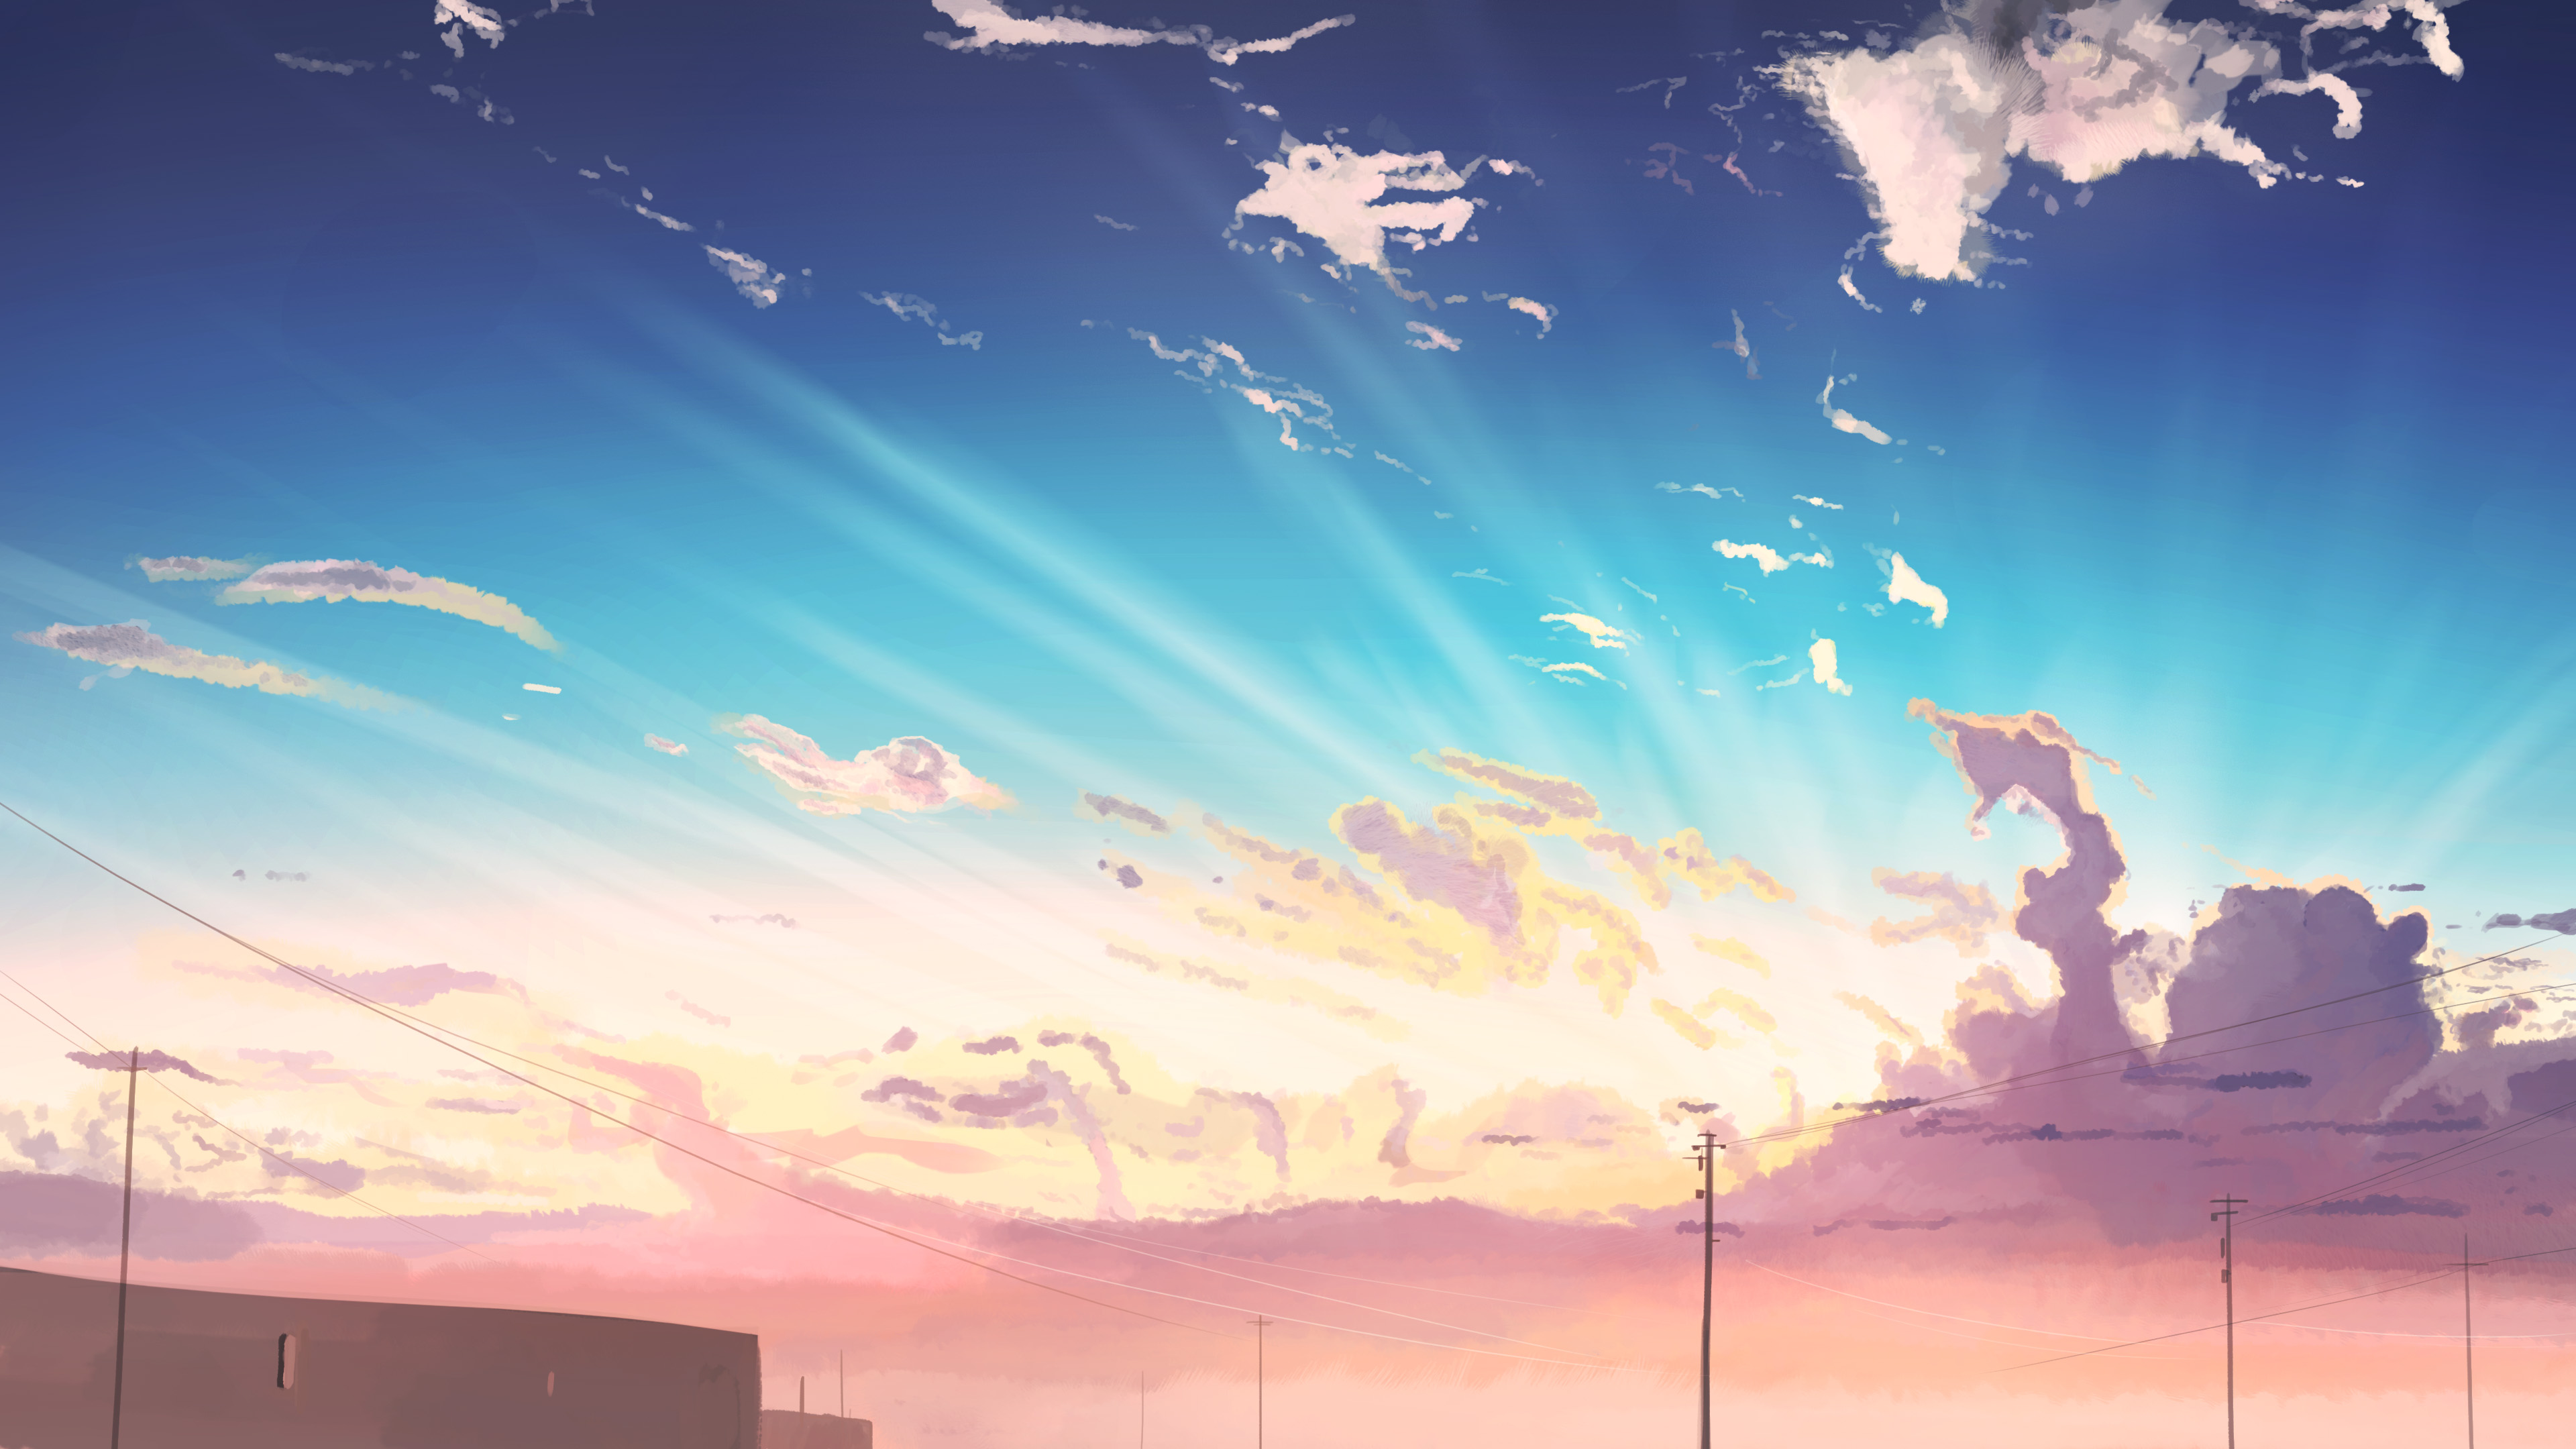 Скачать обои бесплатно Аниме, Небо, Солнце, Облака, Оригинал картинка на рабочий стол ПК